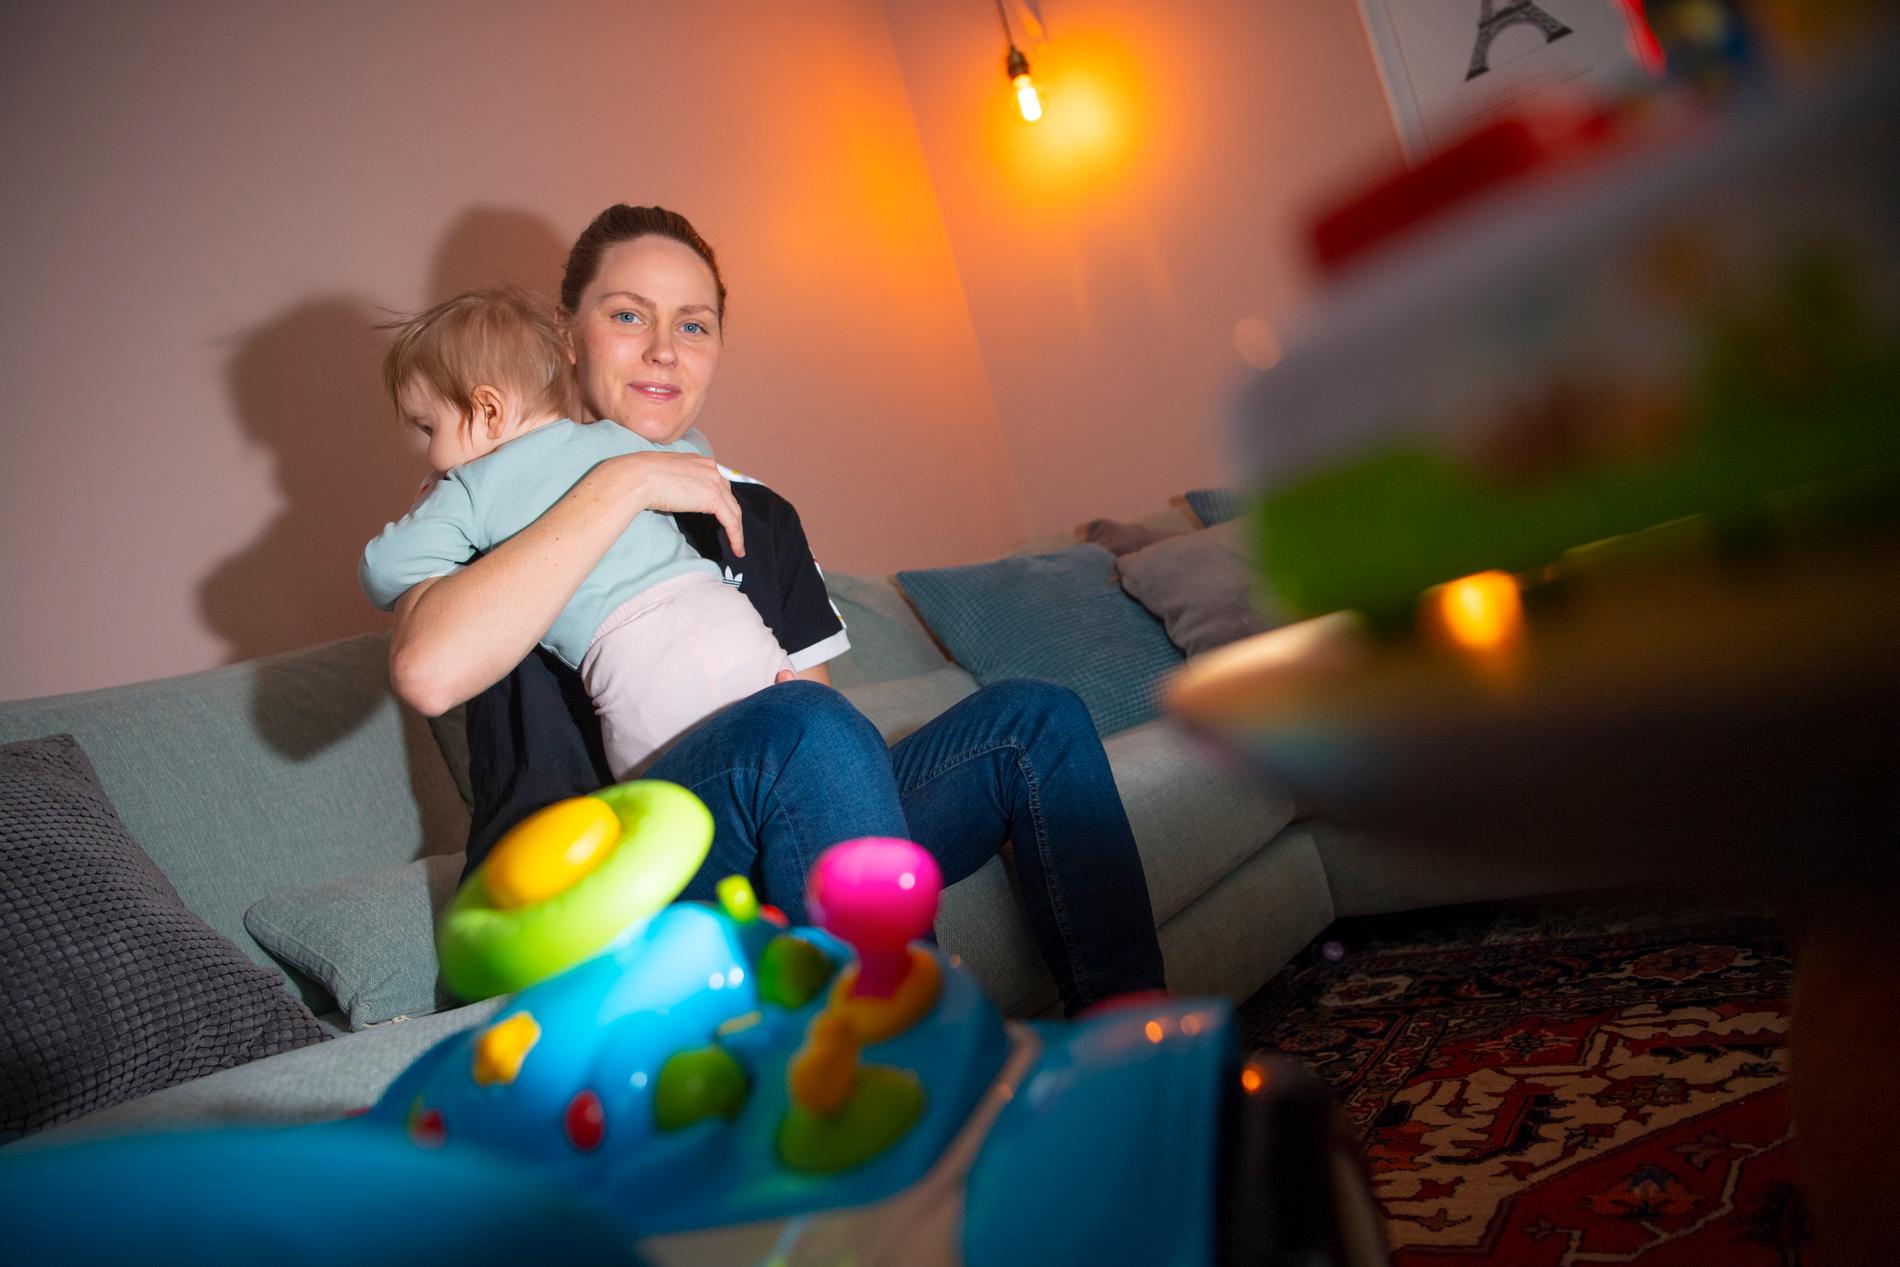 Lisa Dahlkvist bor utanför Umeå med sin fru Jessica och döttrarna Penny, 4, och Kajsa, 8 månader. ”När Umeå gick upp i allsvenskan blev det ett bra alternativ”, säger Dahlkvist.